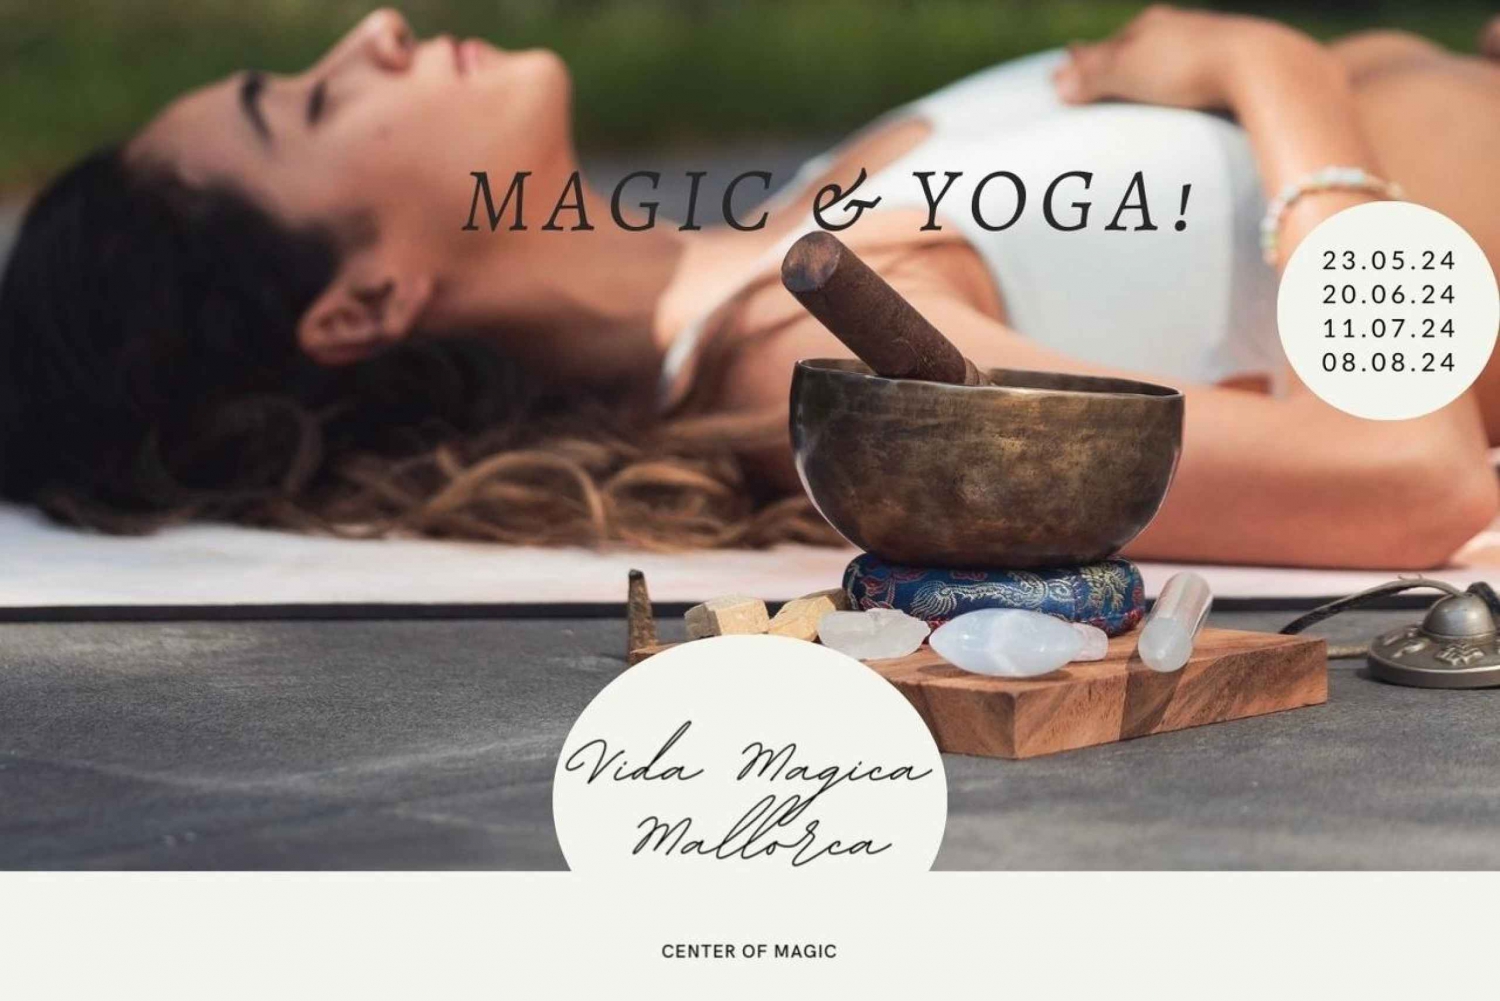 Felanitx: Magical Yoga Retreat 3 days